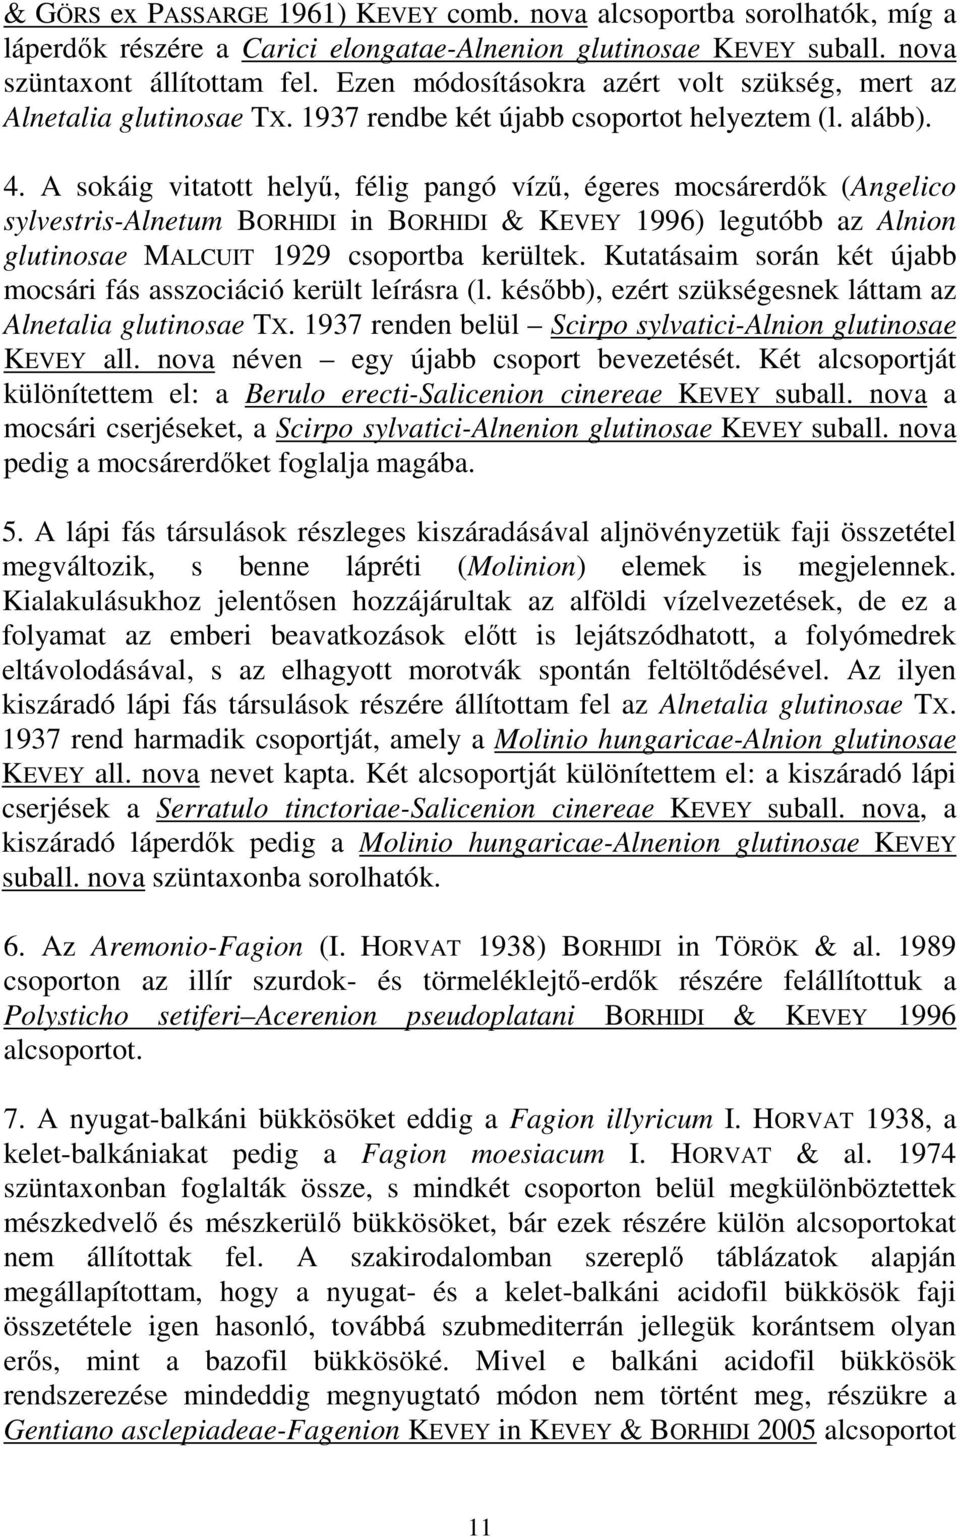 A sokáig vitatott helyő, félig pangó víző, égeres mocsárerdık (Angelico sylvestris-alnetum BORHIDI in BORHIDI & KEVEY 1996) legutóbb az Alnion glutinosae MALCUIT 1929 csoportba kerültek.